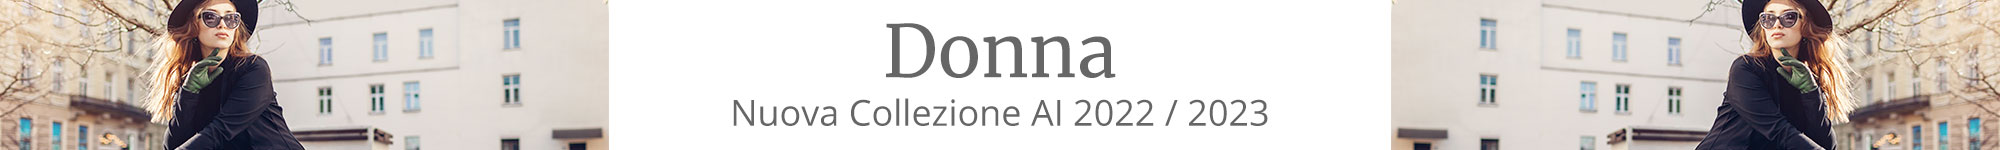 Donna AI 2022 - 2023